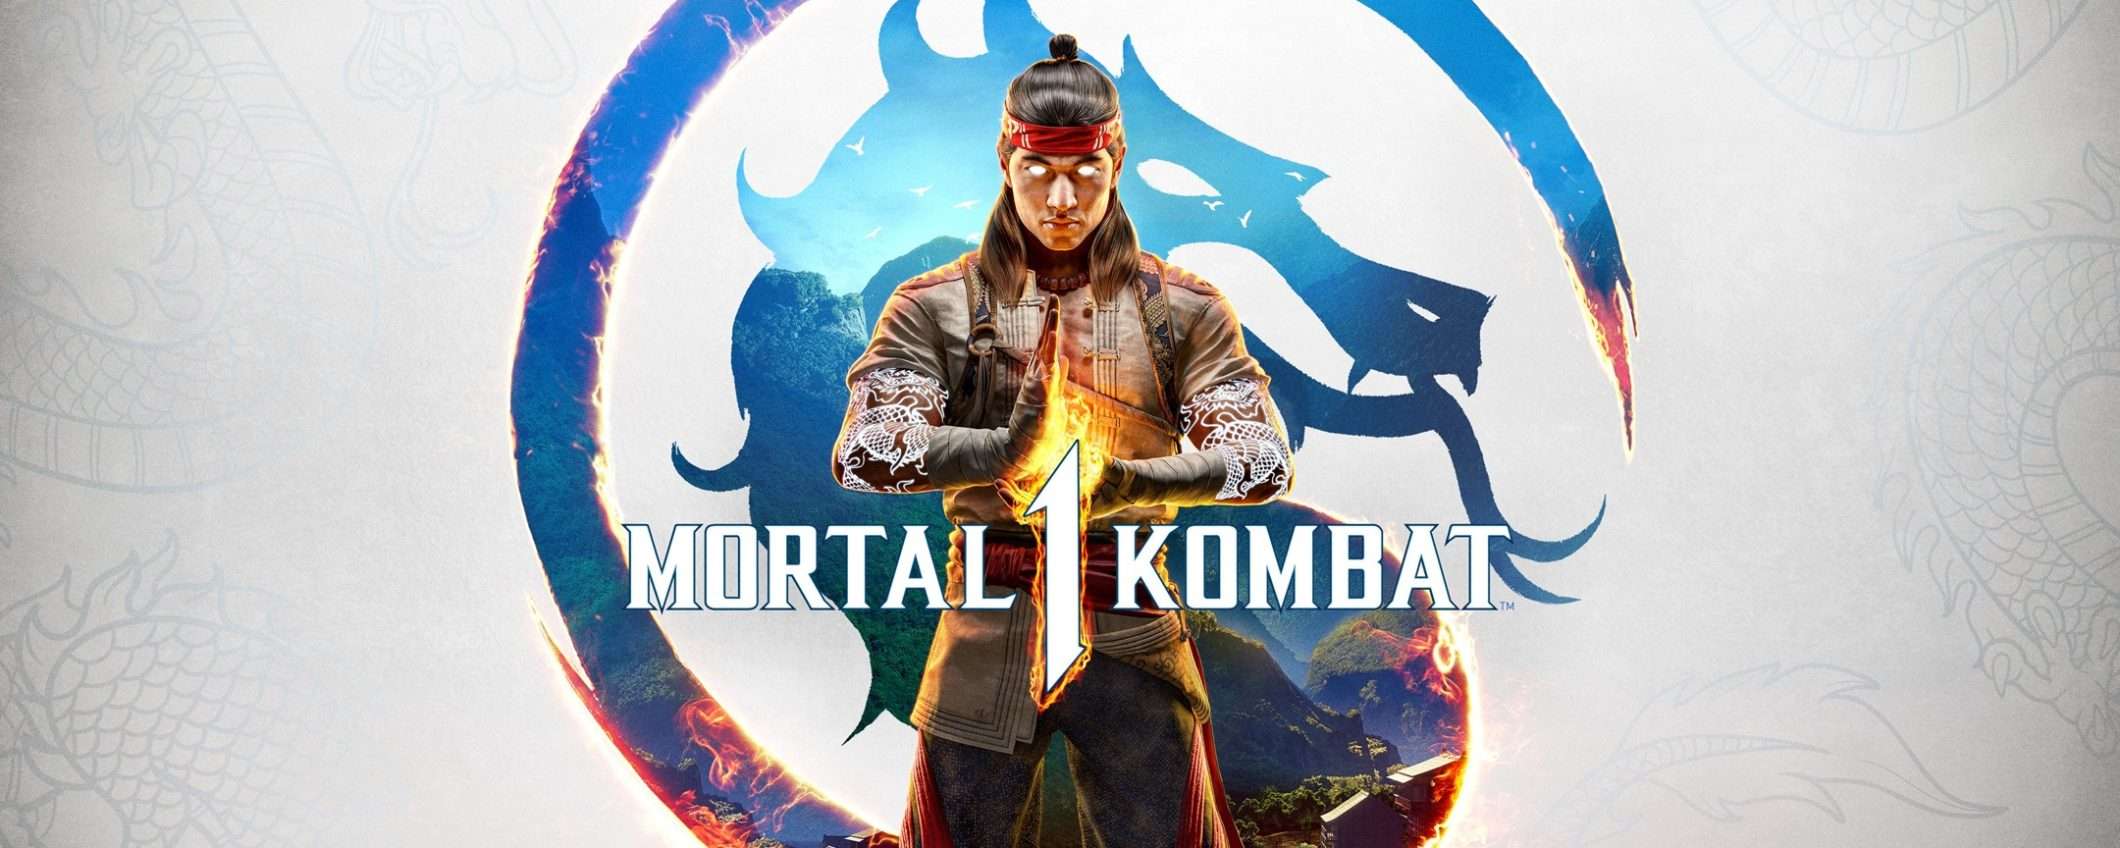 Mortal Kombat 1 scontato del 50% su Amazon: il prezzo CROLLA a 37€